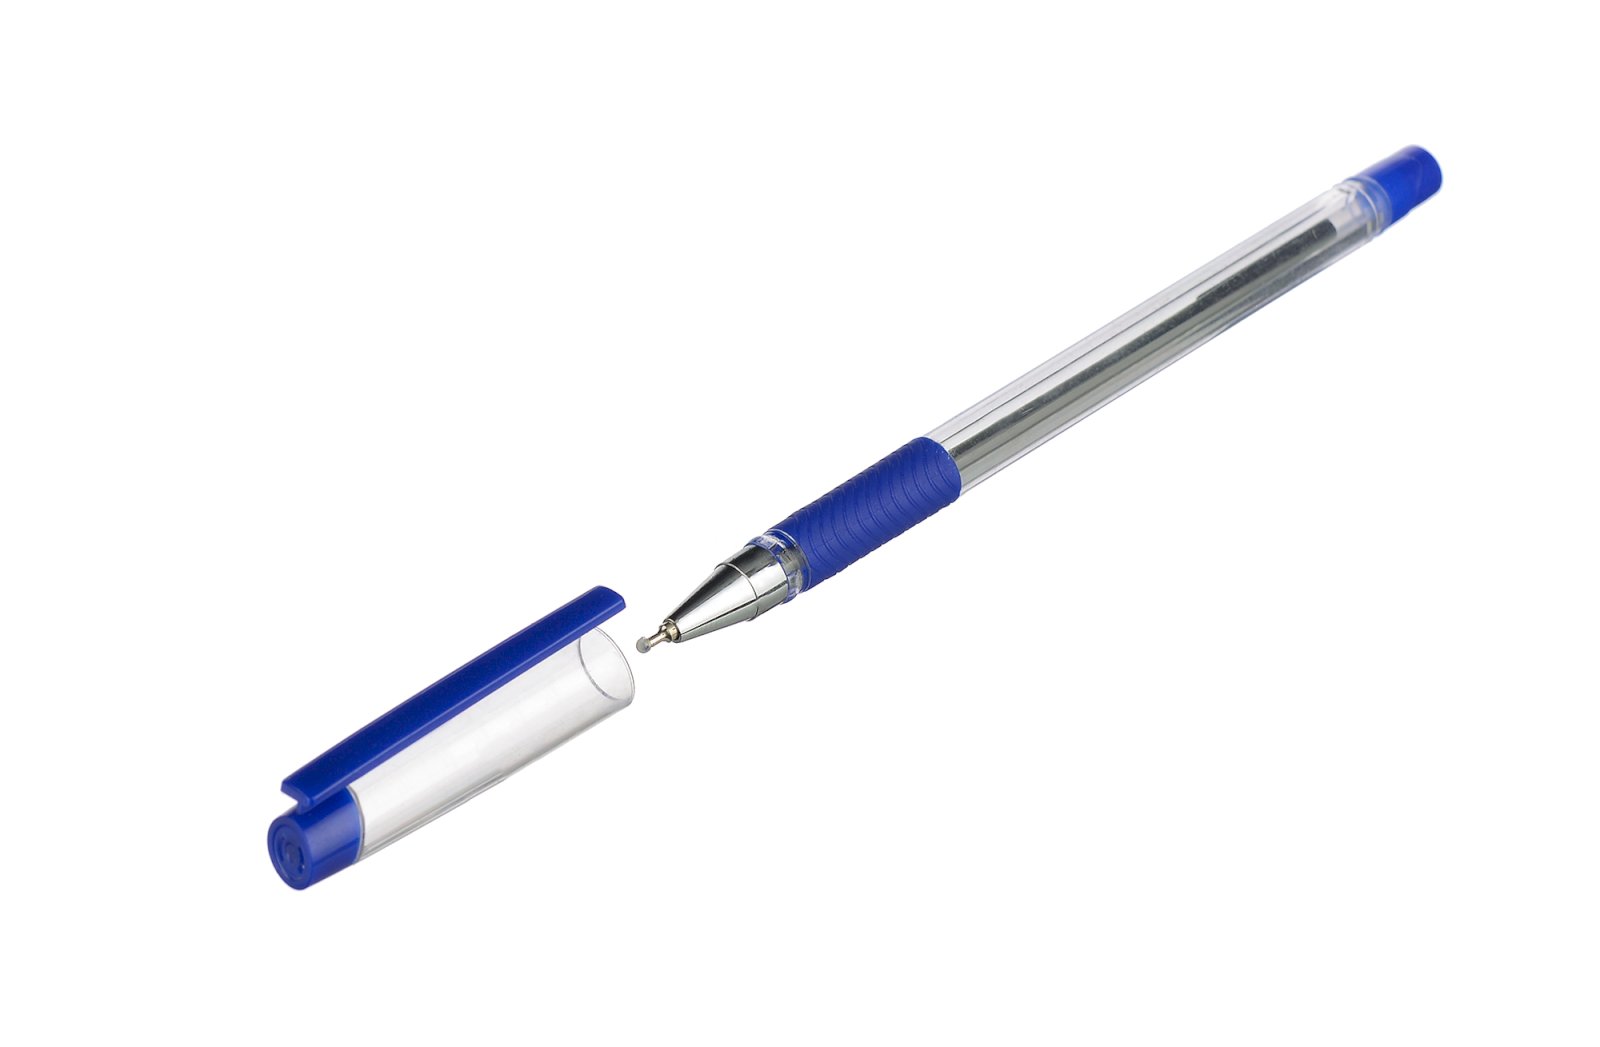 Шариковая ручка ErichKrause Ultra L-30 с колпачком и резиновым упором в цвет цернил. Чернила синего цвета на масляной основе обеспечивают мягкое, ровное письмо. Толщина линии письма - 0,26 мм.